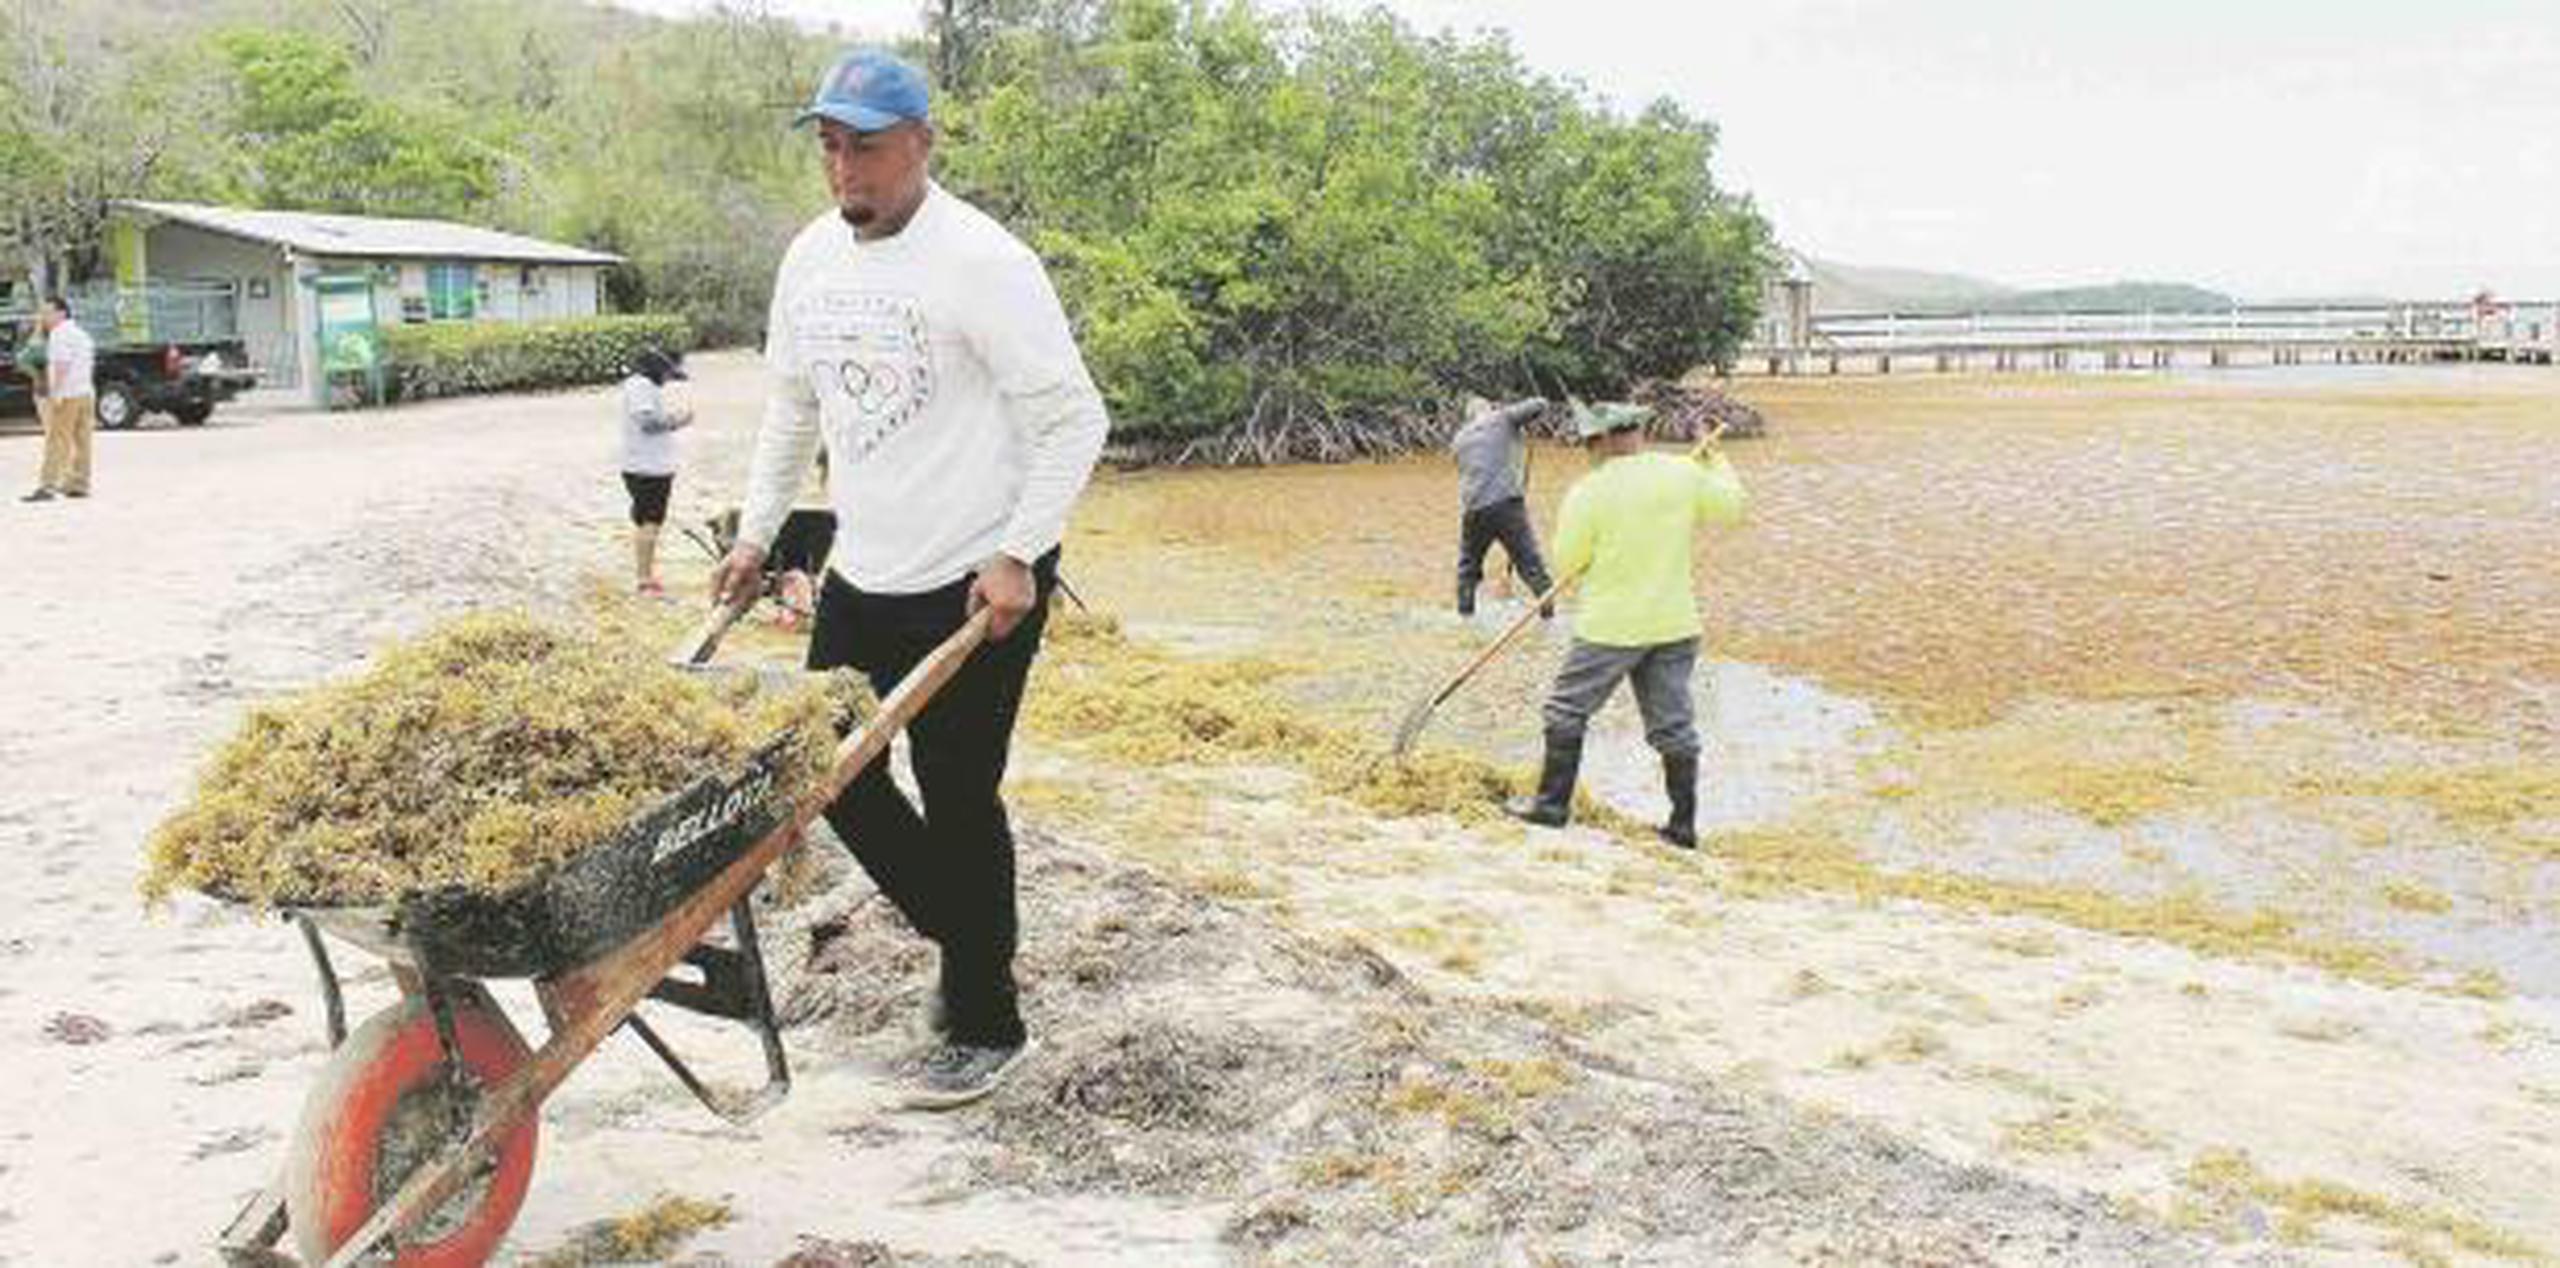 En Lajas, solo el año pasado se extrajeron cerca 40 toneladas de sargazo de la costa, según se informó. Sin embargo, el alcalde de Lajas ha encontrado una forma de sacarle provecho a la difícil situación por la que atraviesan. (Suministrada)